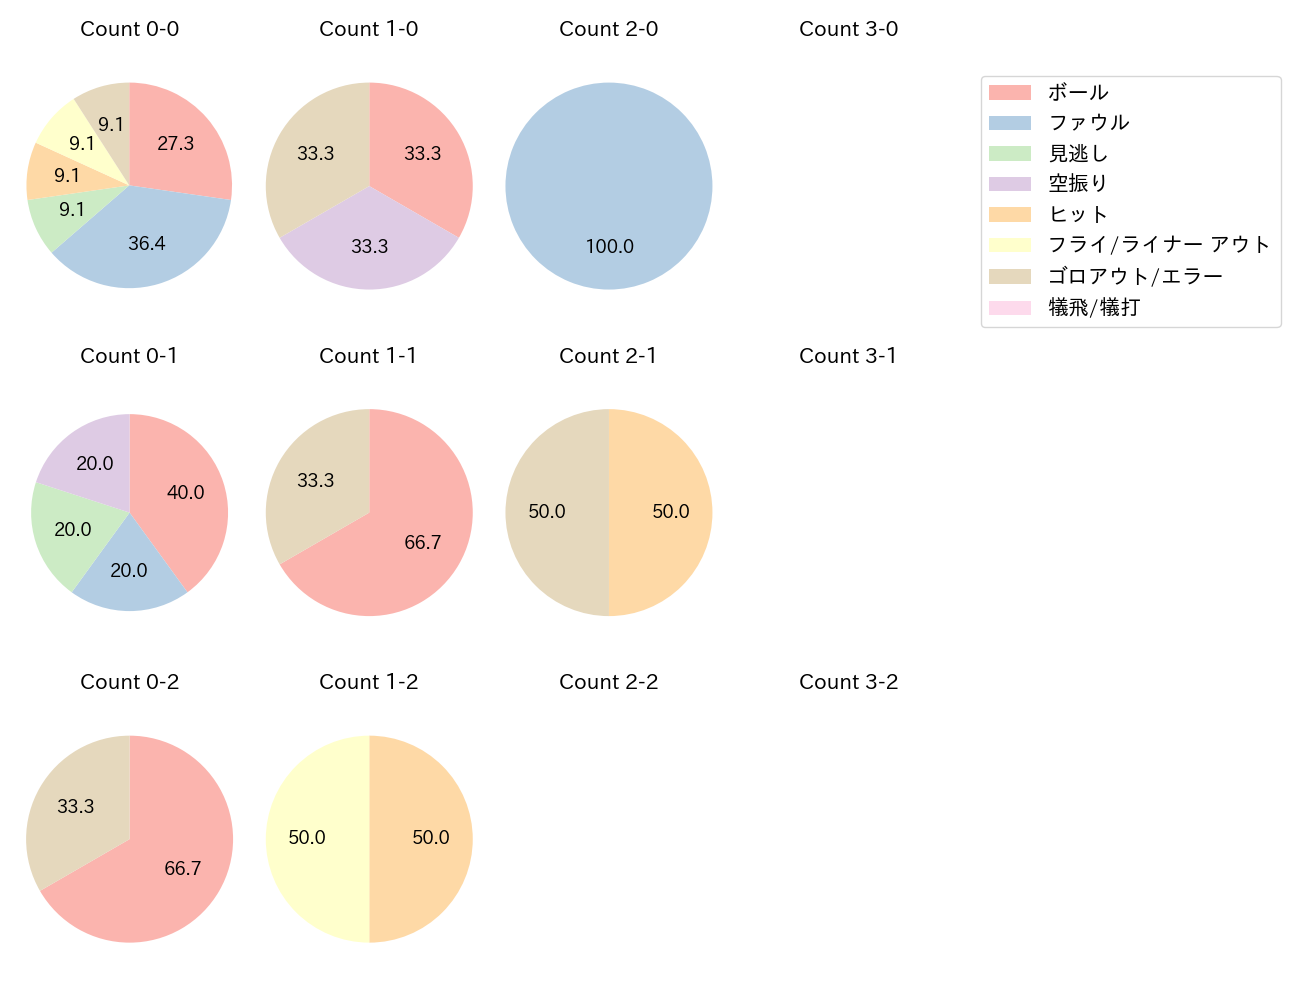 細川 成也の球数分布(2021年6月)